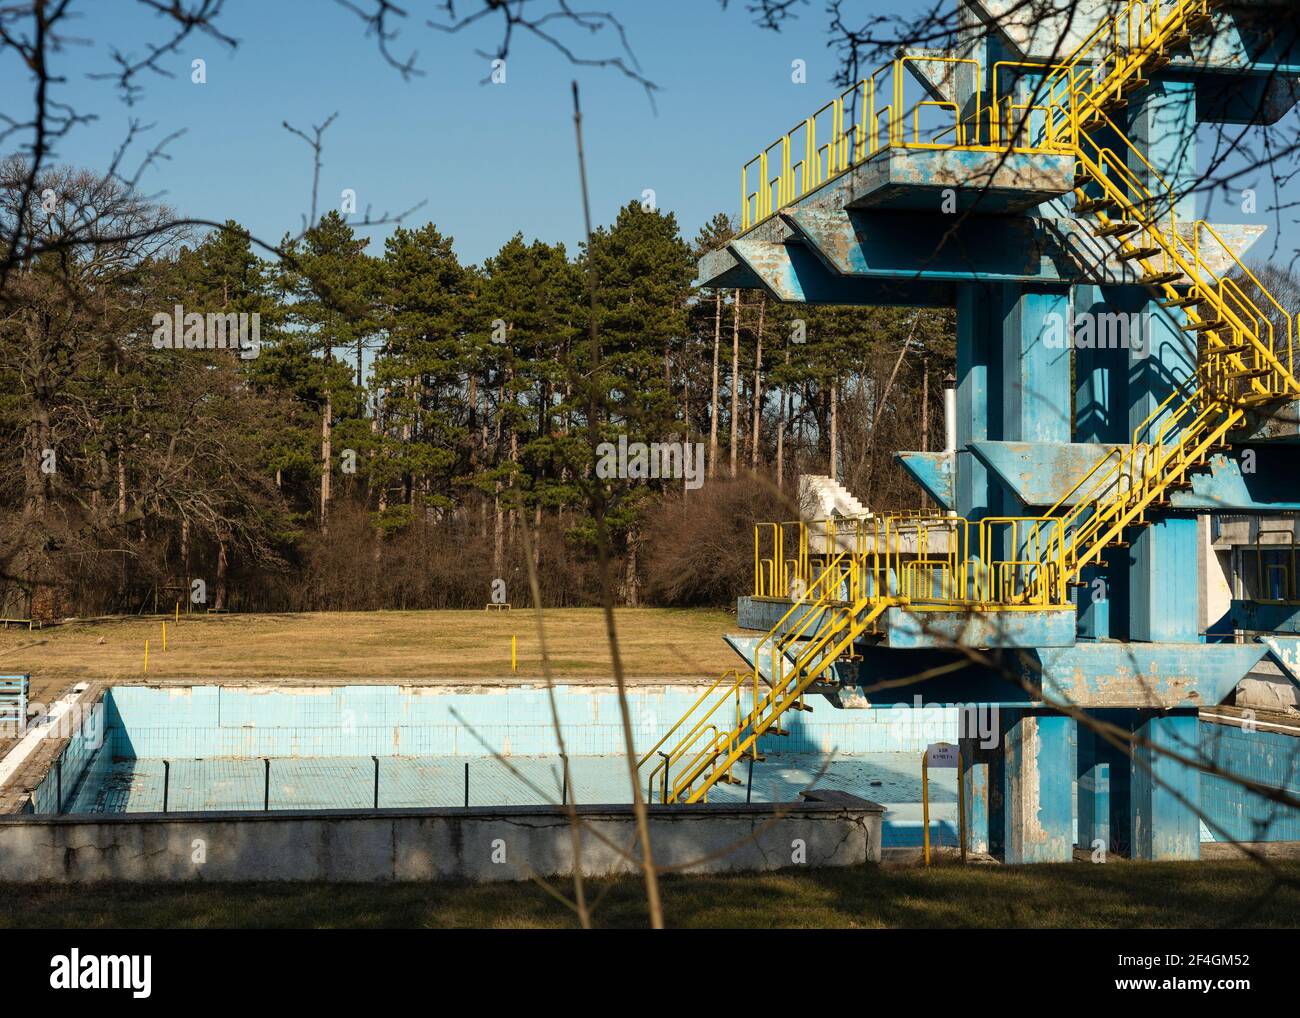 Piscine bleue abandonnée et tour de plongée en béton abandonnée et abandonnée, dans le parc de Sofia, Bulgarie, Europe de l'est Banque D'Images